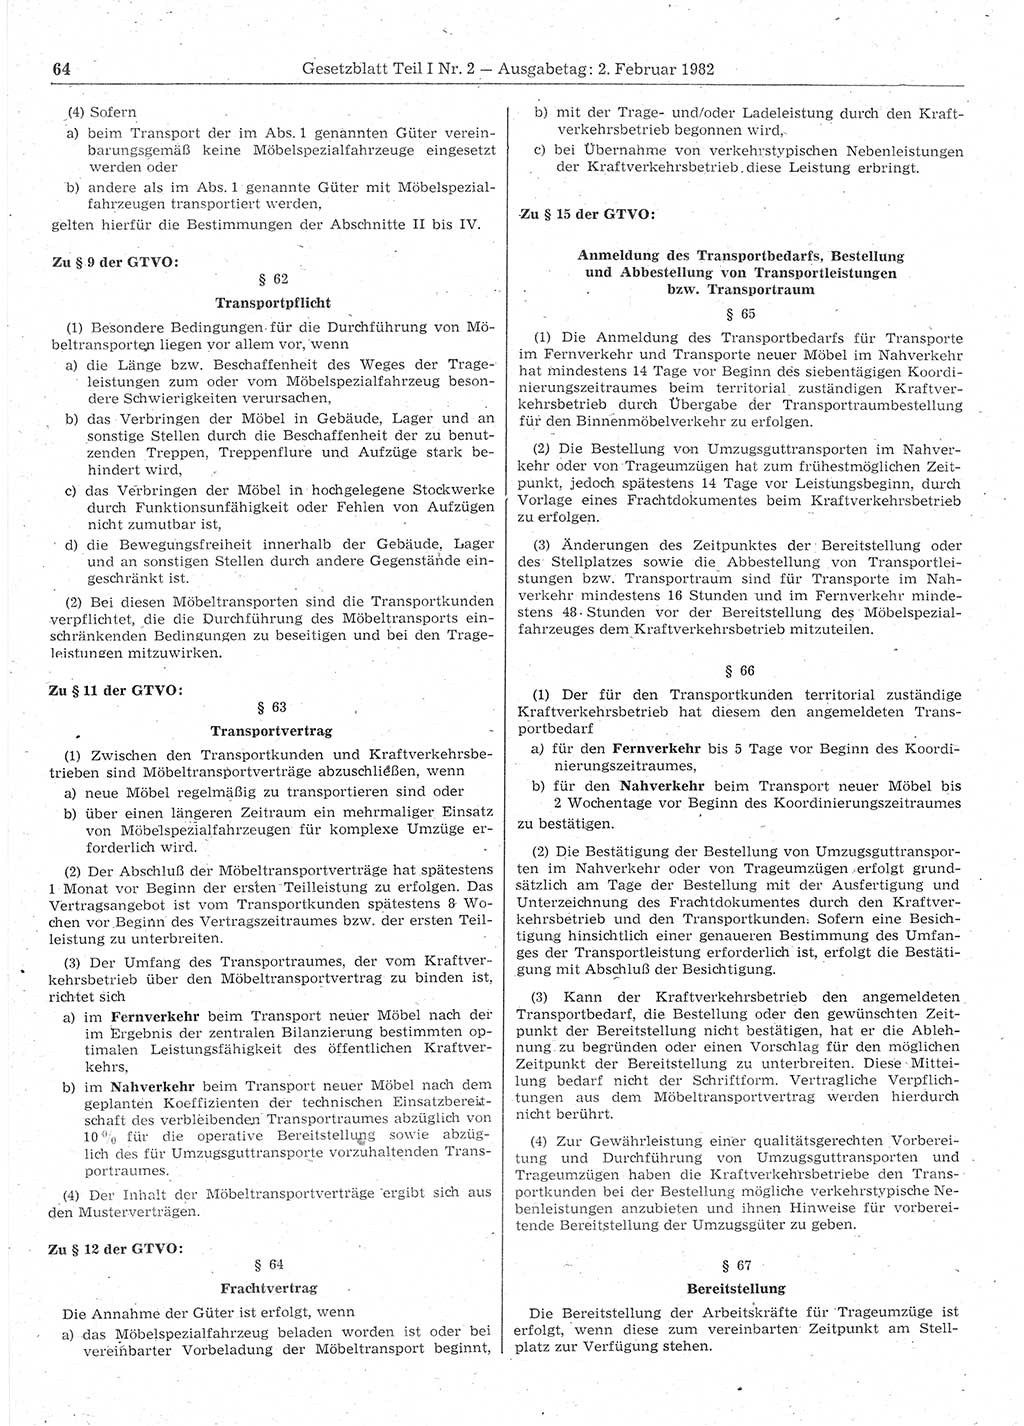 Gesetzblatt (GBl.) der Deutschen Demokratischen Republik (DDR) Teil Ⅰ 1982, Seite 64 (GBl. DDR Ⅰ 1982, S. 64)